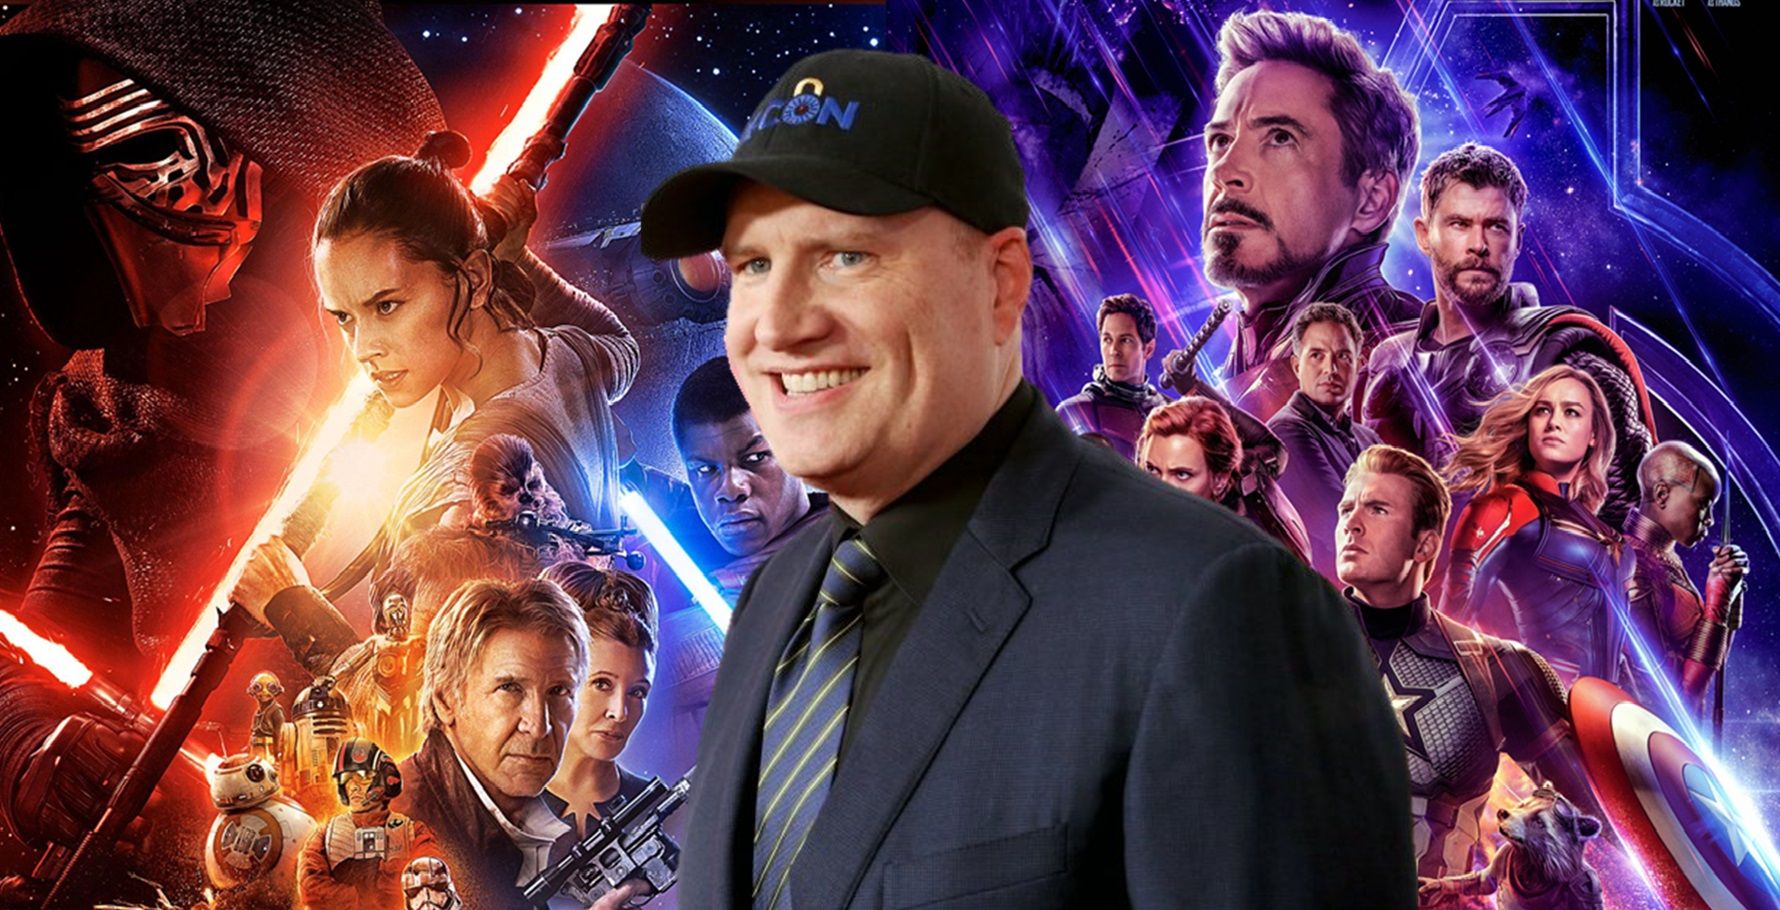 Kevin Feige confirma que su película de Star Wars ha sido cancelada